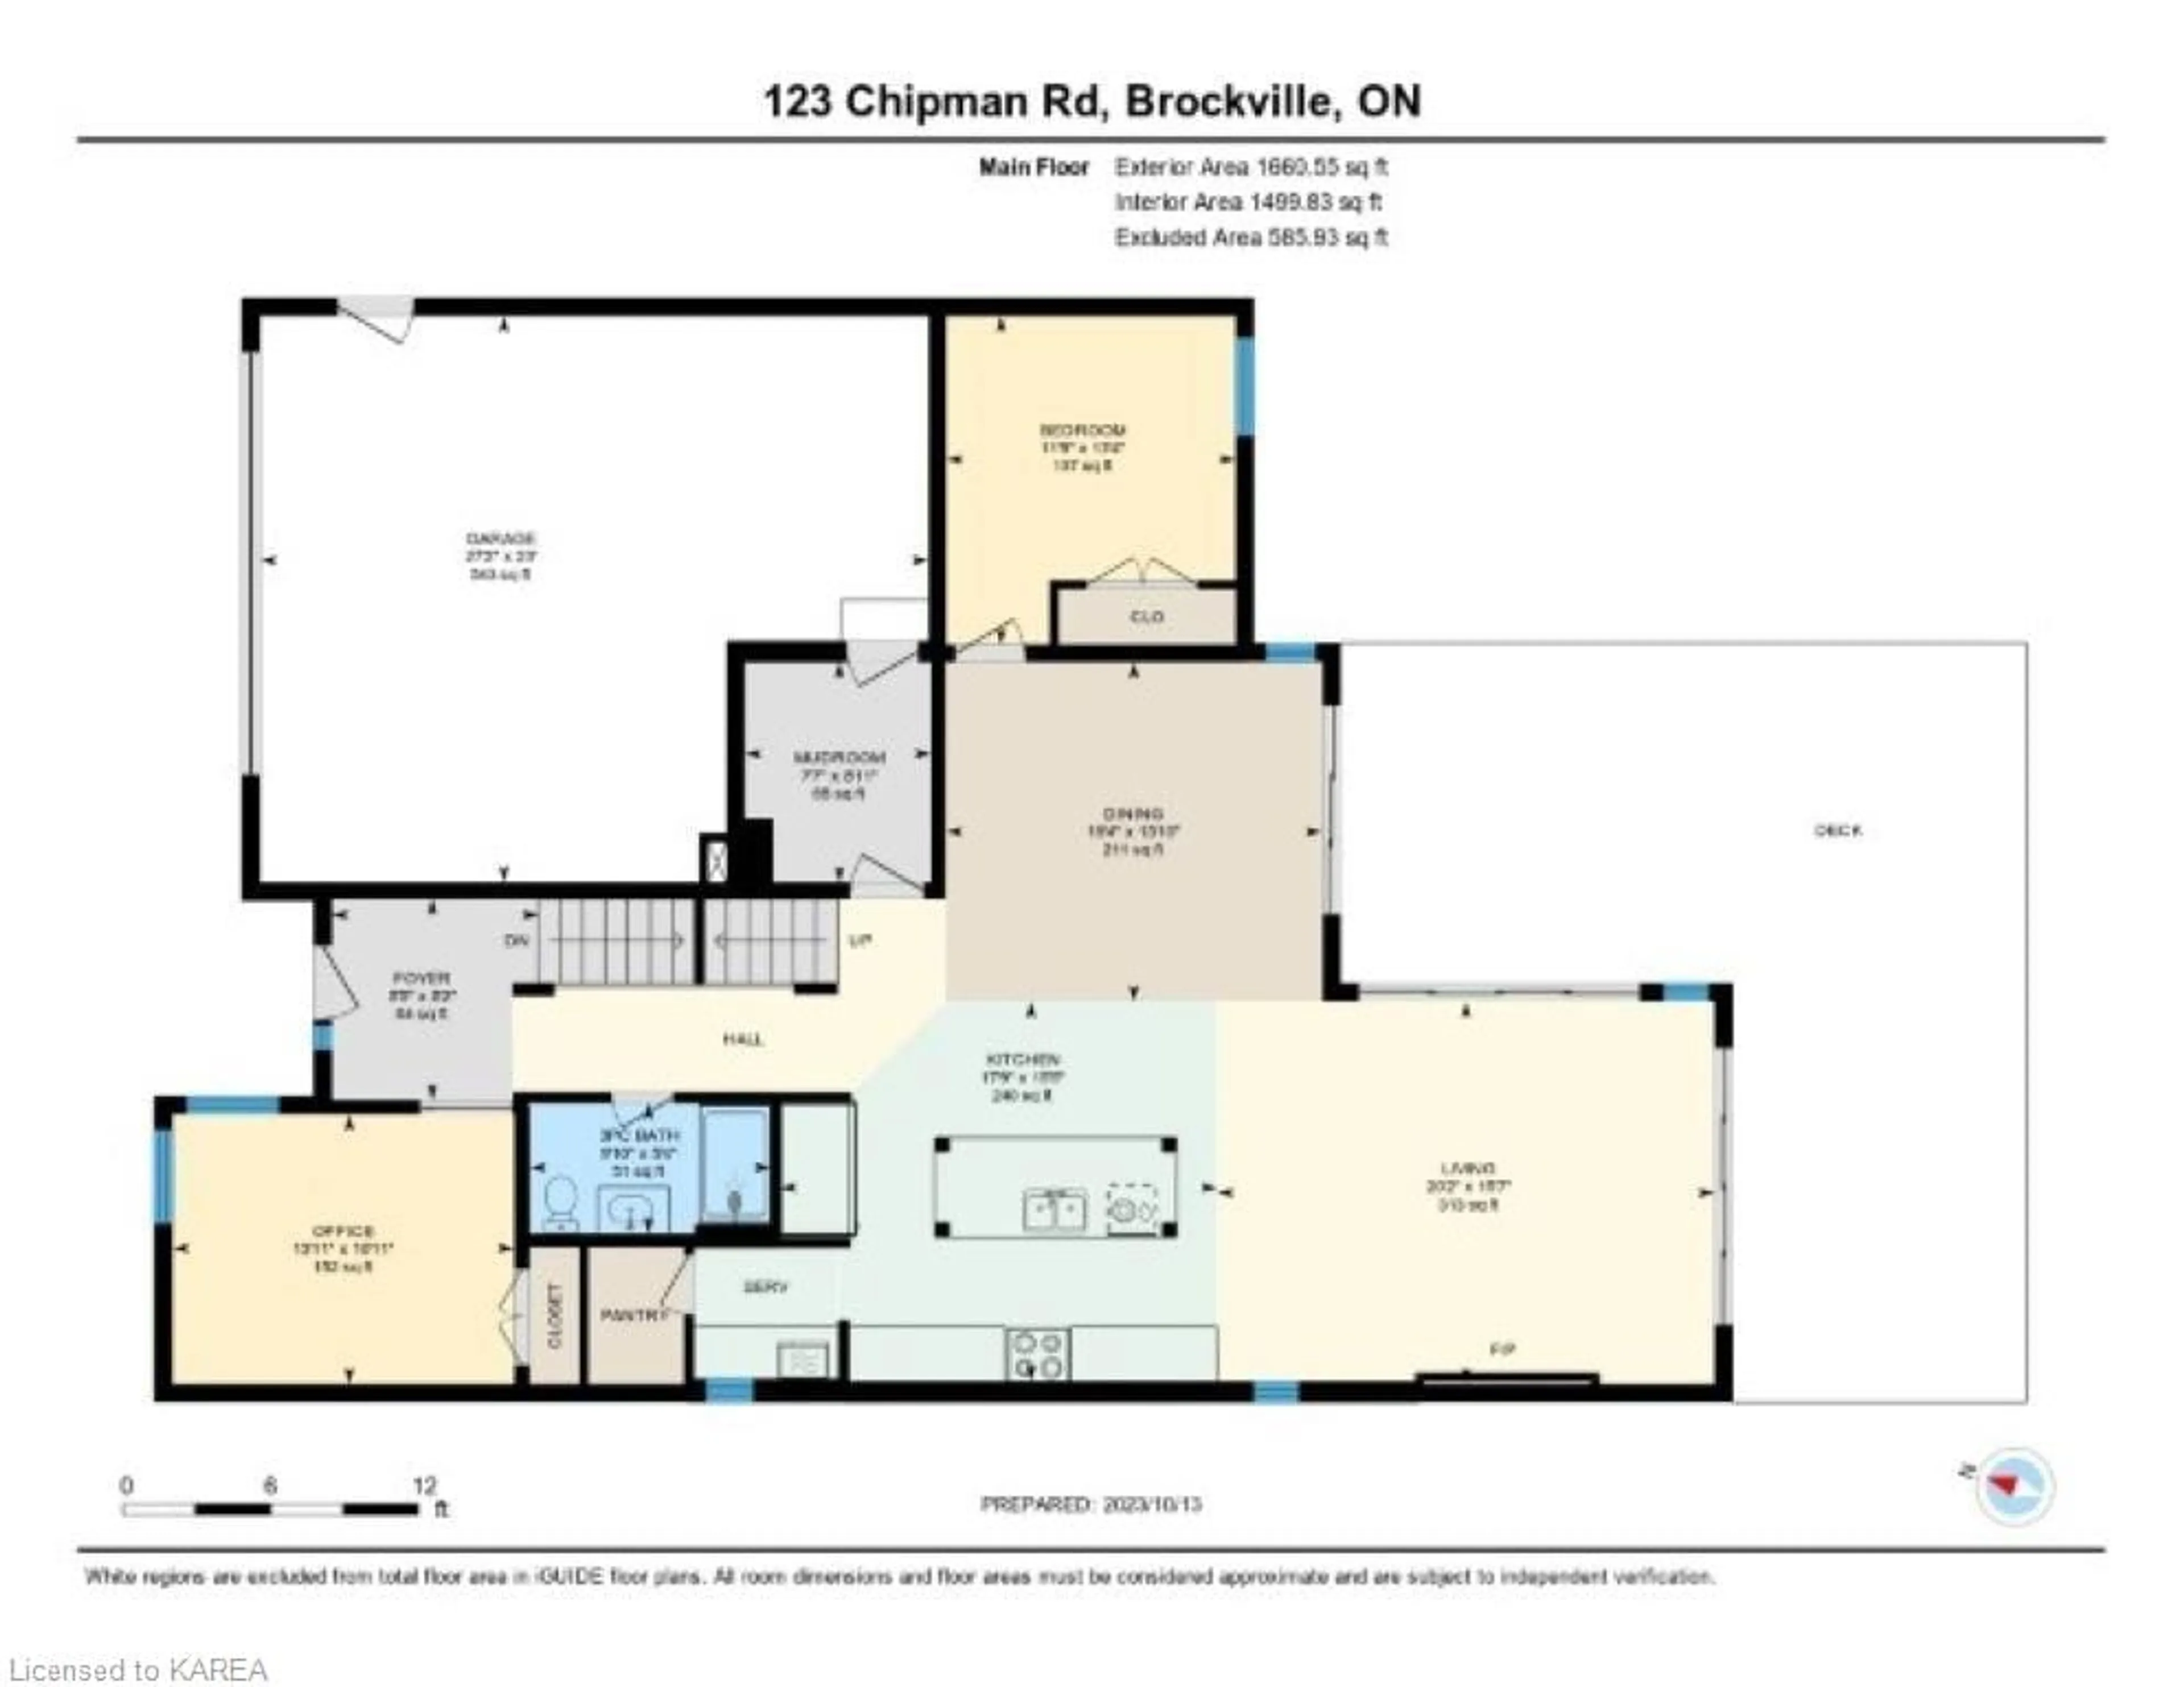 Floor plan for 123 Chipman Rd, Brockville Ontario K6V 6Y8